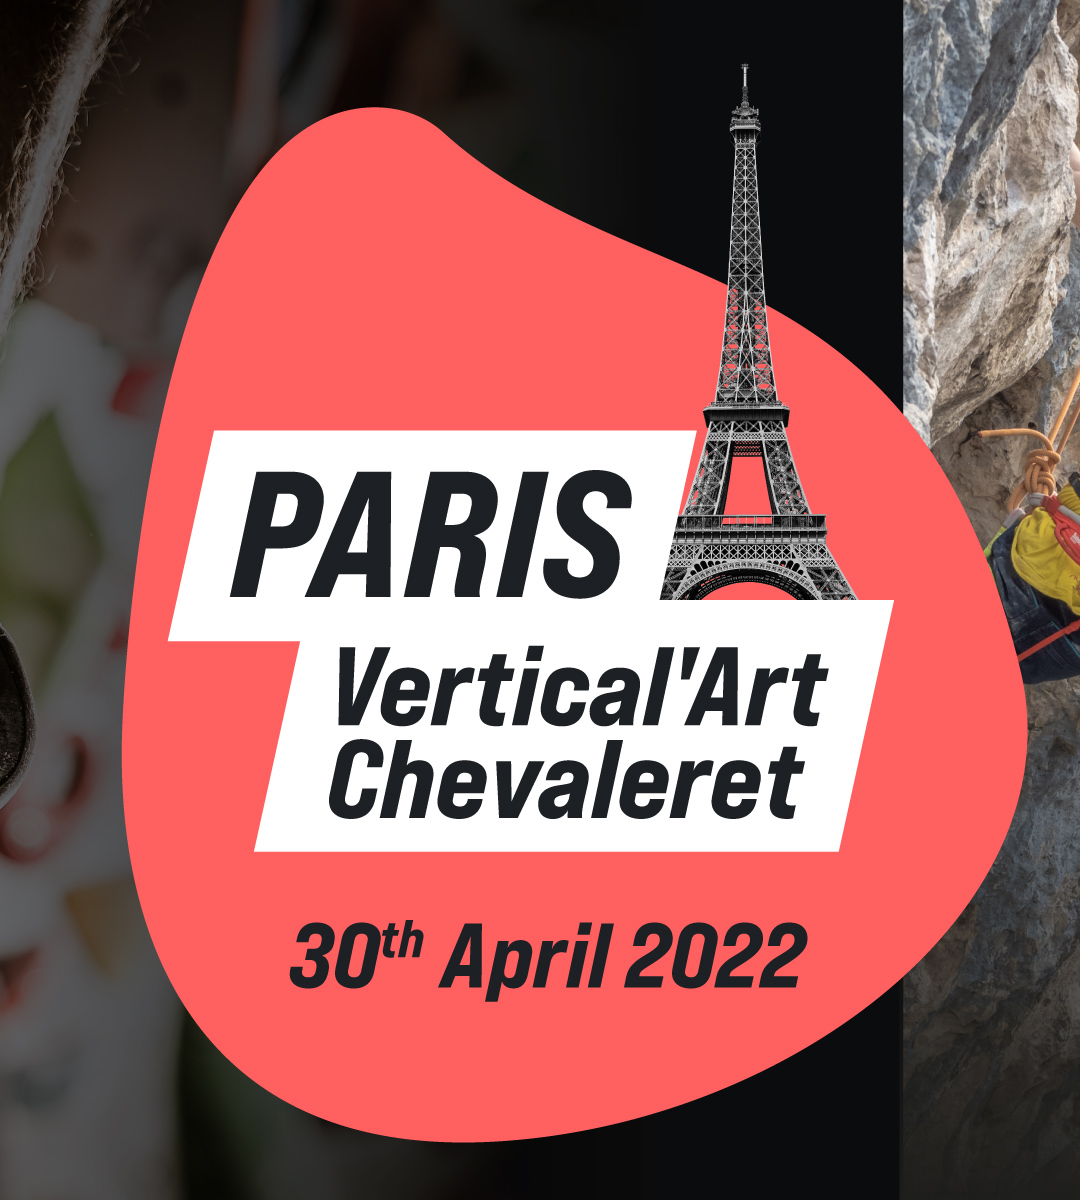 Paris Chevaleret Vertical'Art, Climb Europe La Sportiva, 30 avril 2022, étape parisienne